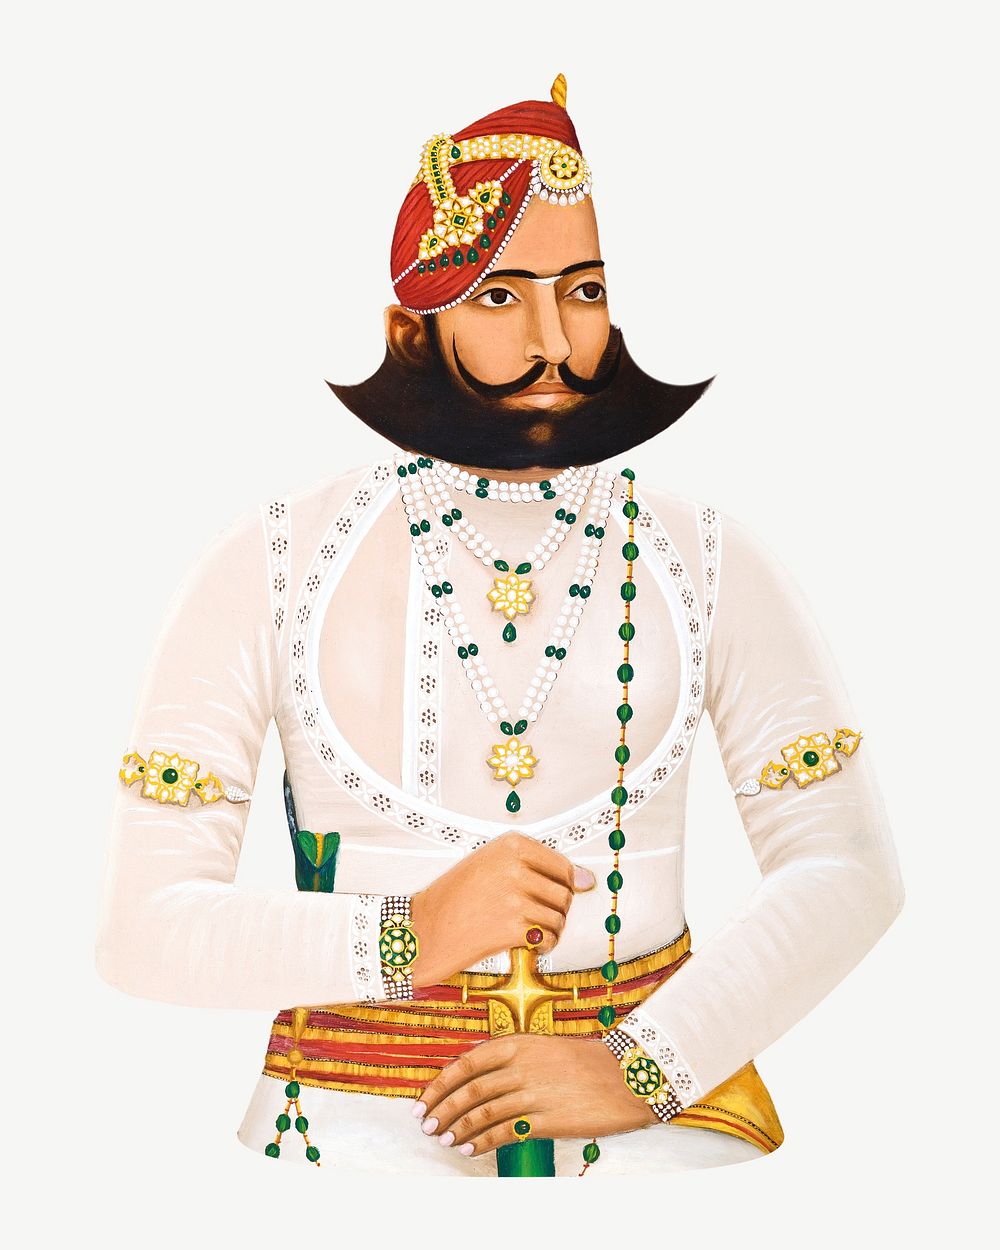 Kunwar Sabal Singh, vintage man illustration psd. Remixed by rawpixel.